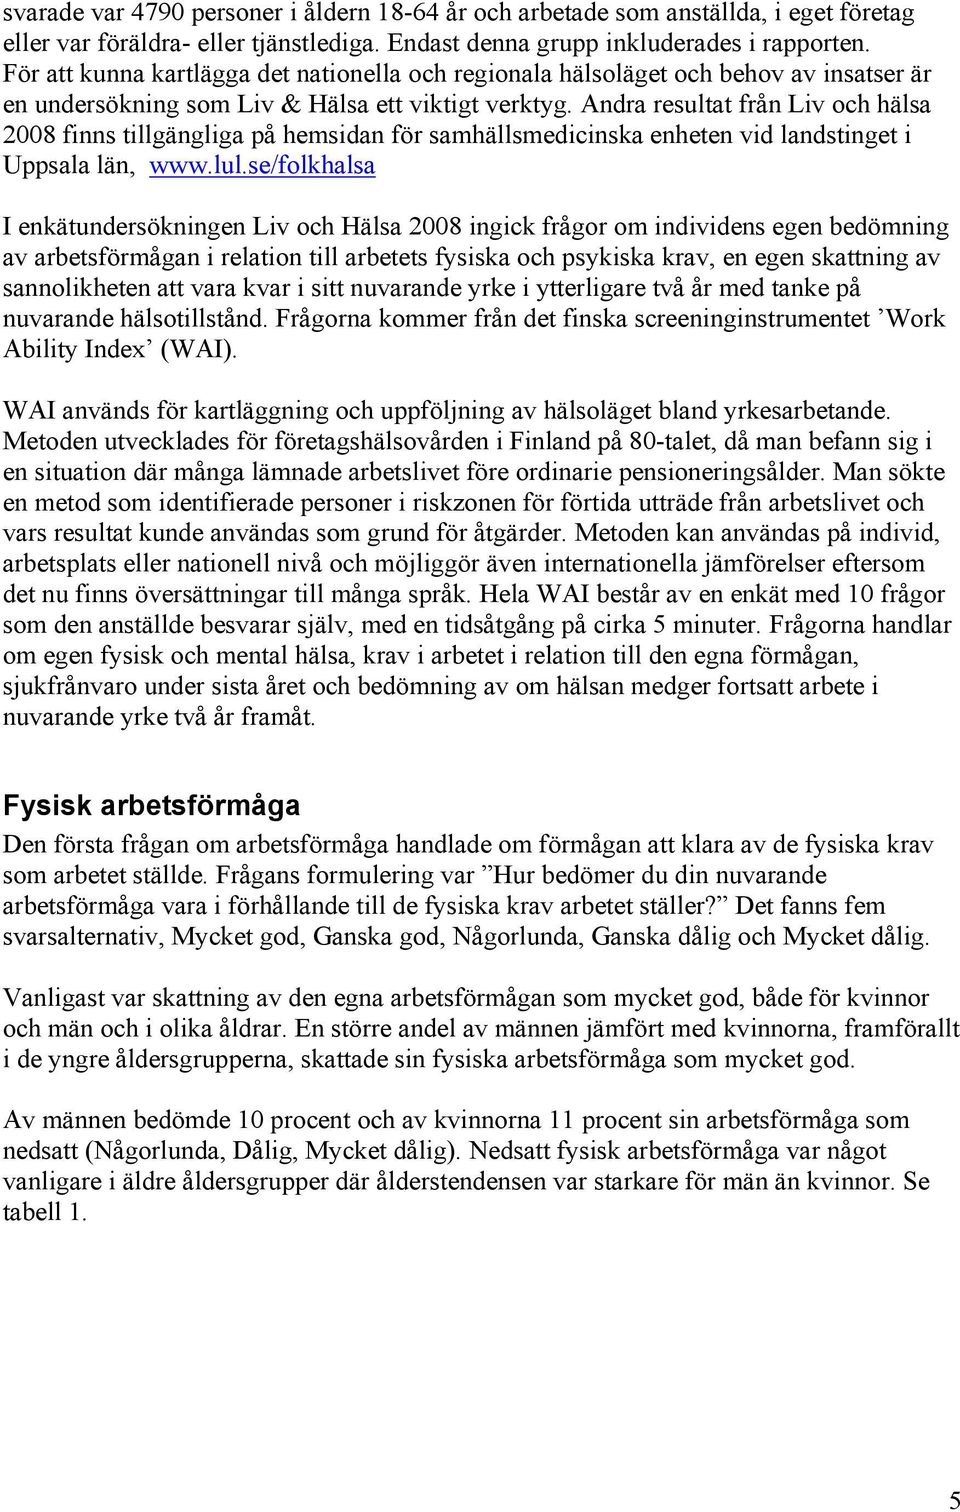 Andra resultat från Liv och hälsa 2008 finns tillgängliga på hemsidan för samhällsmedicinska enheten vid landstinget i Uppsala län, www.lul.